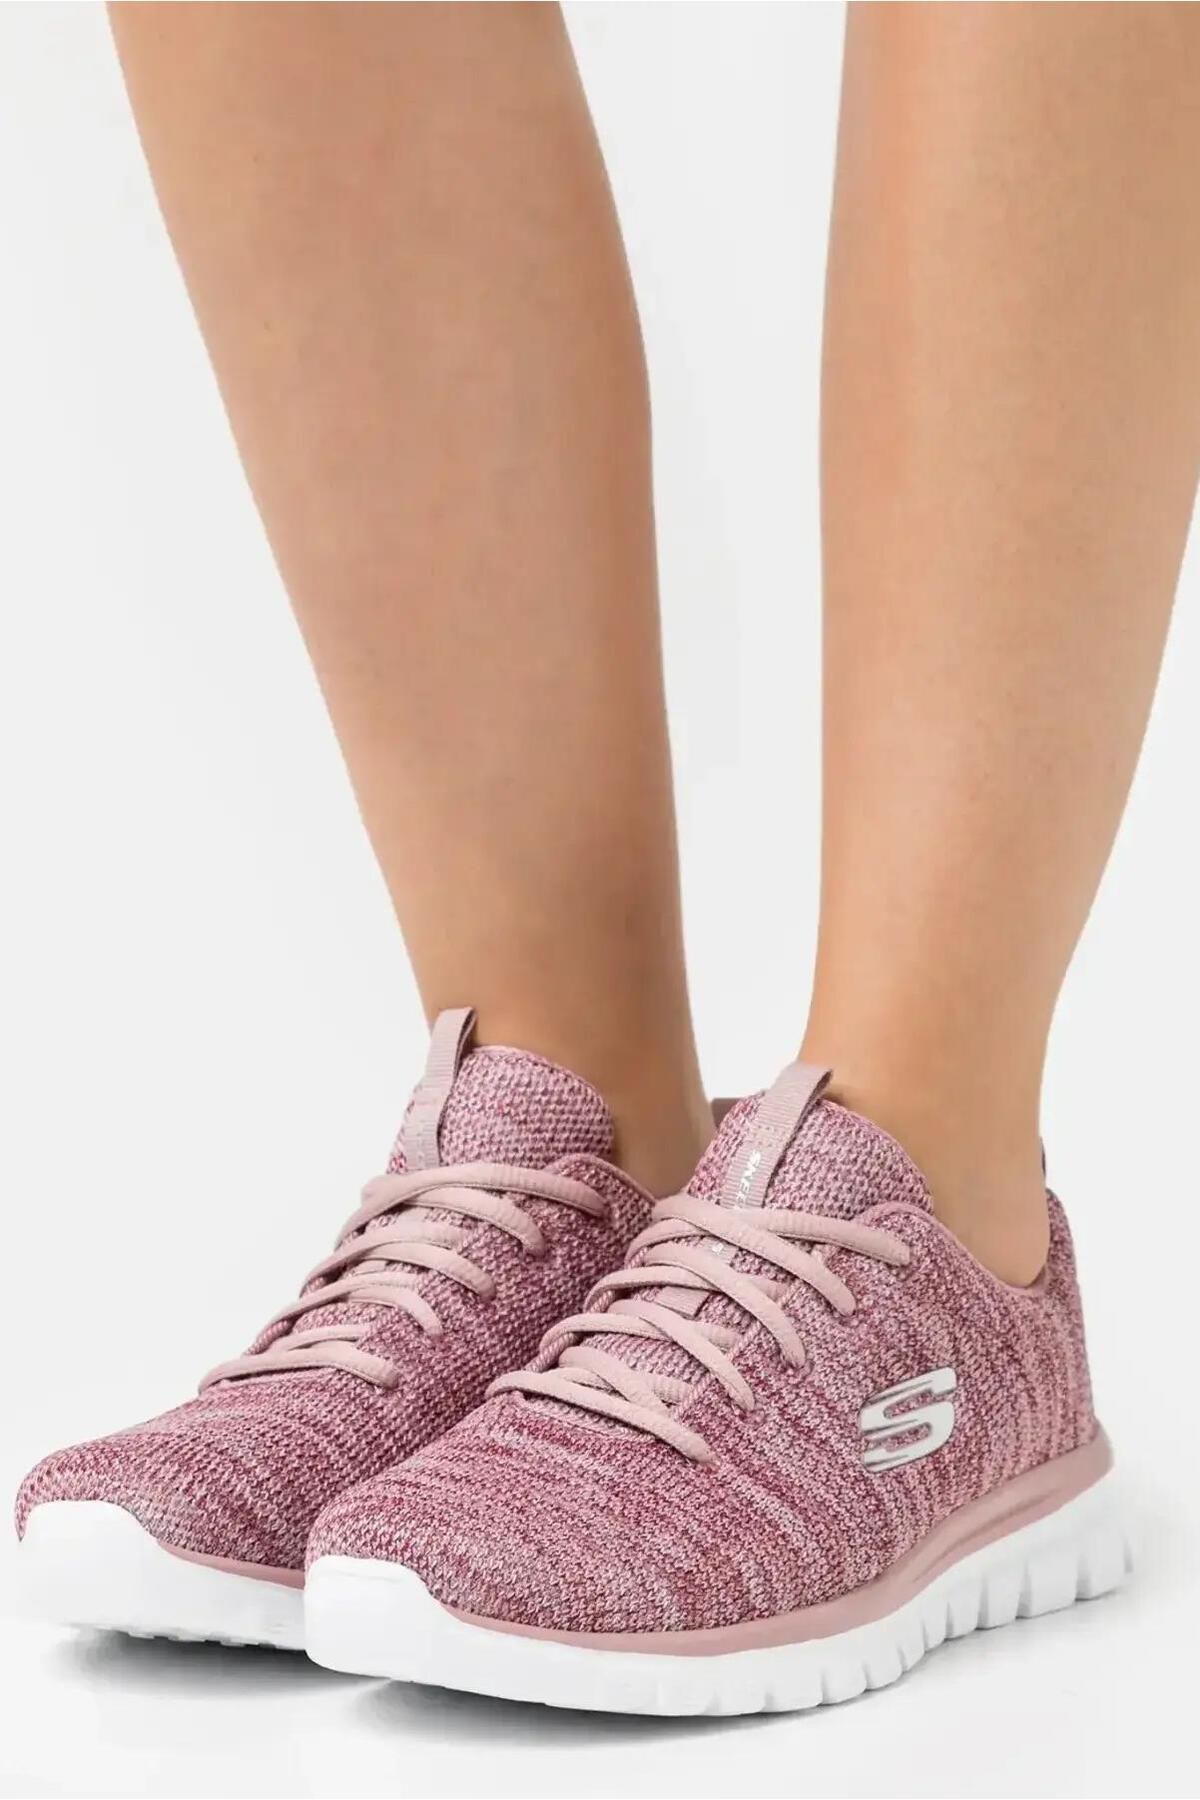 Skechers Graceful Memory Foam Yastıklı Taban Kadın Spor Ayakkabı